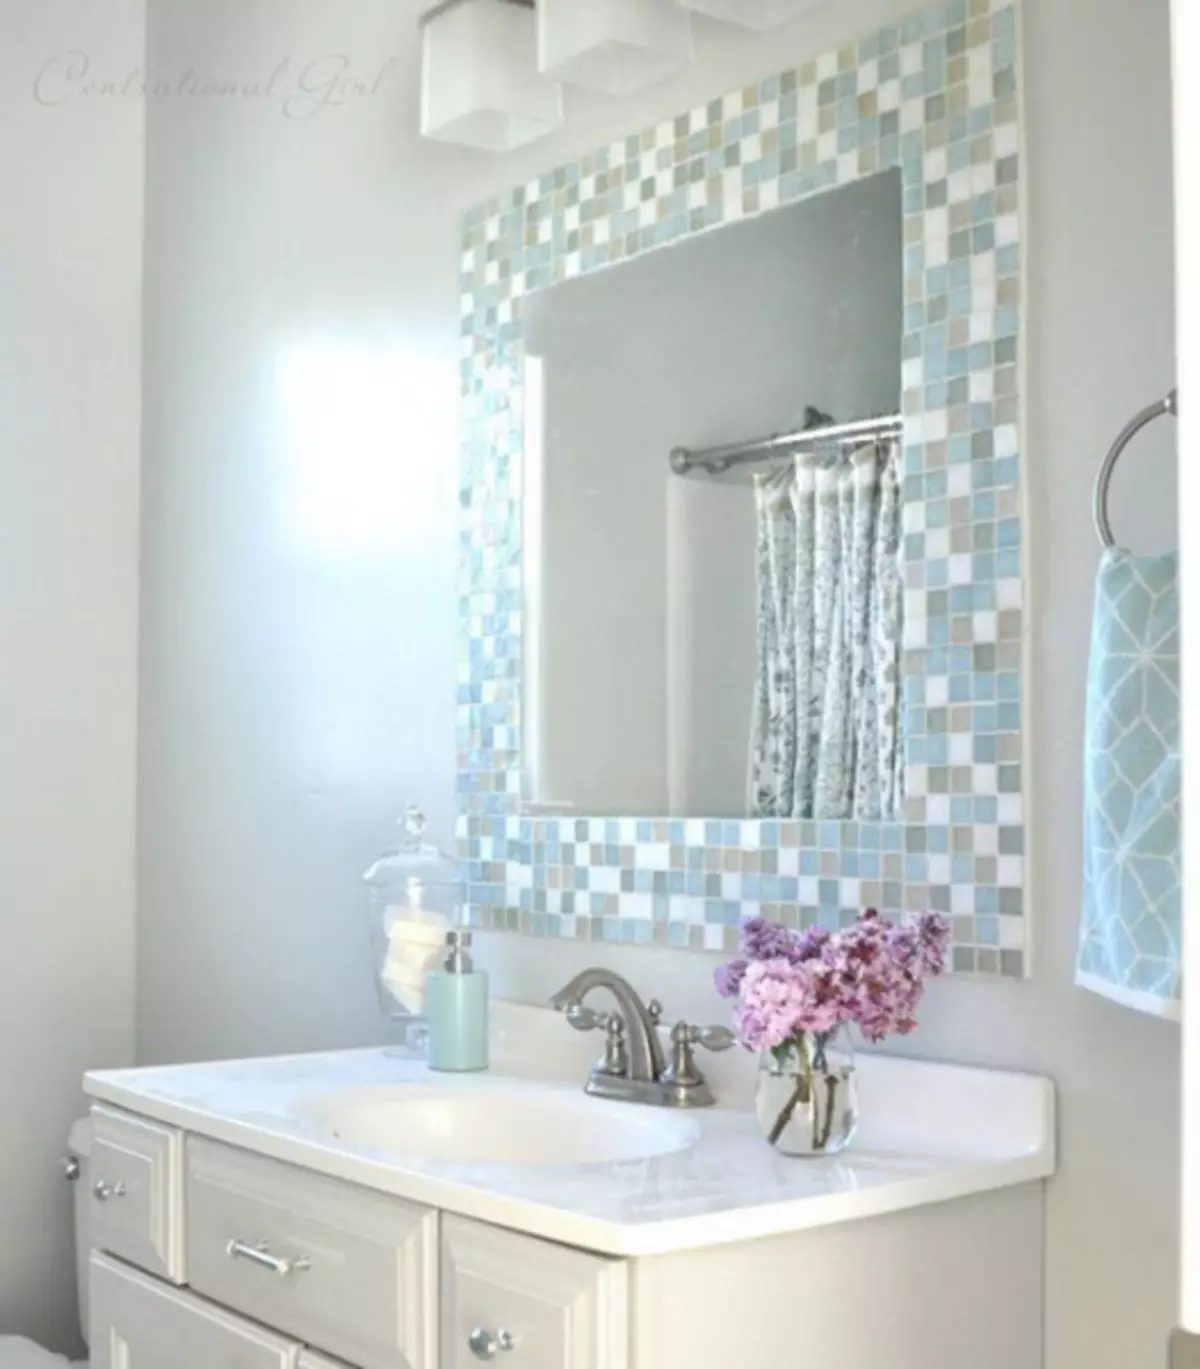 Зеркала в плитке ванной комнаты. Декор ванной комнаты. Зеркало мозаика. Зеркало с мозаикой в ванной. Декор зеркала в ванной комнате.